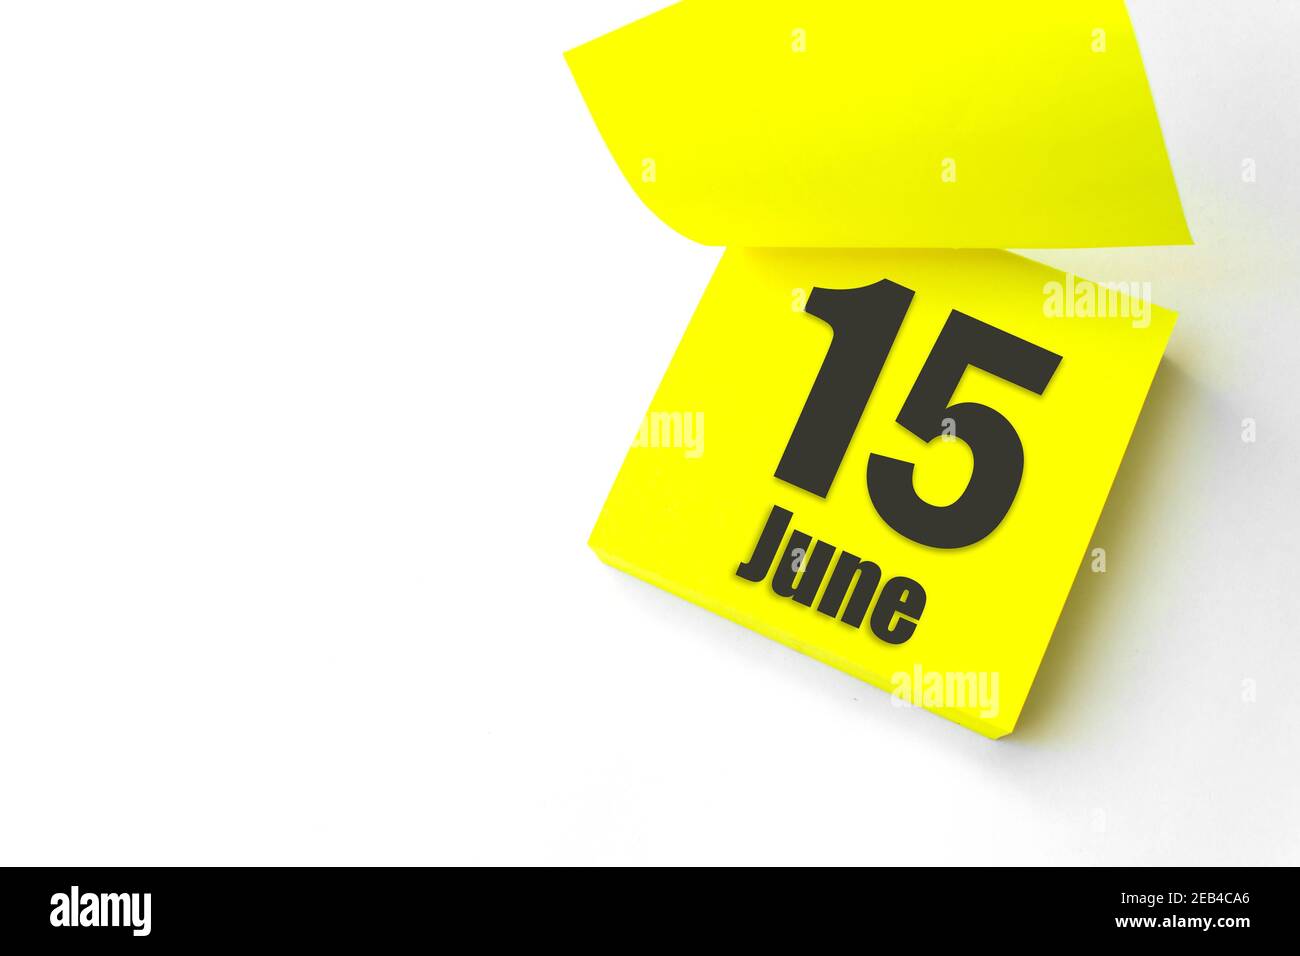 Juni 15th. Tag 15 des Monats, Kalenderdatum. Nahaufnahme leeres gelbes Papier Erinnerung Haftnotiz auf weißem Hintergrund. Sommer Monat, Tag des Jahres Konzept Stockfoto